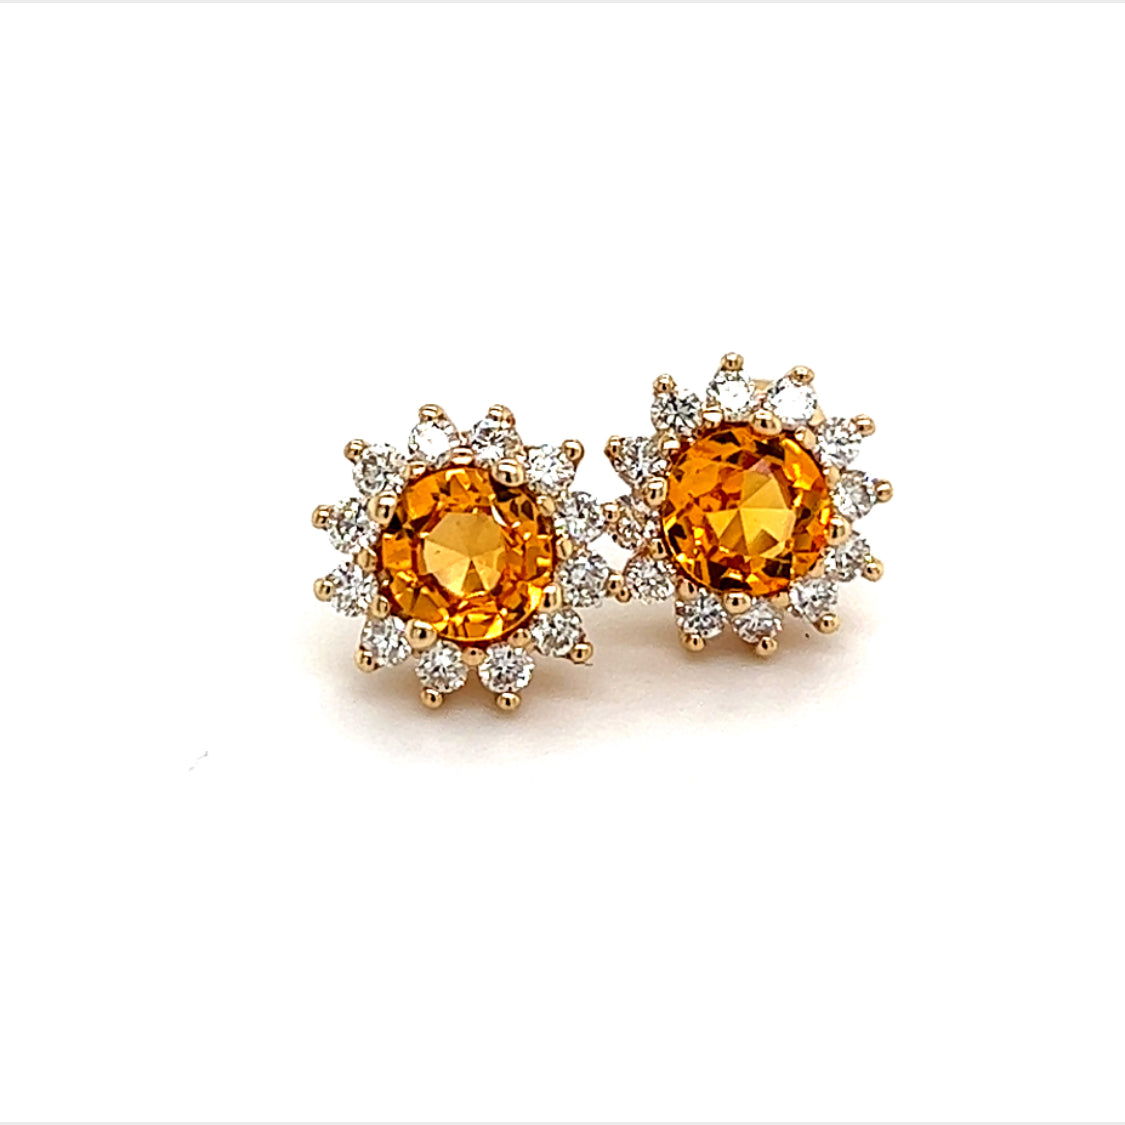 Natural Sapphire Diamond Earrings 14k Y Gold 1.48 TCW Certified $4,950 211354 - Certified Fine Jewelry